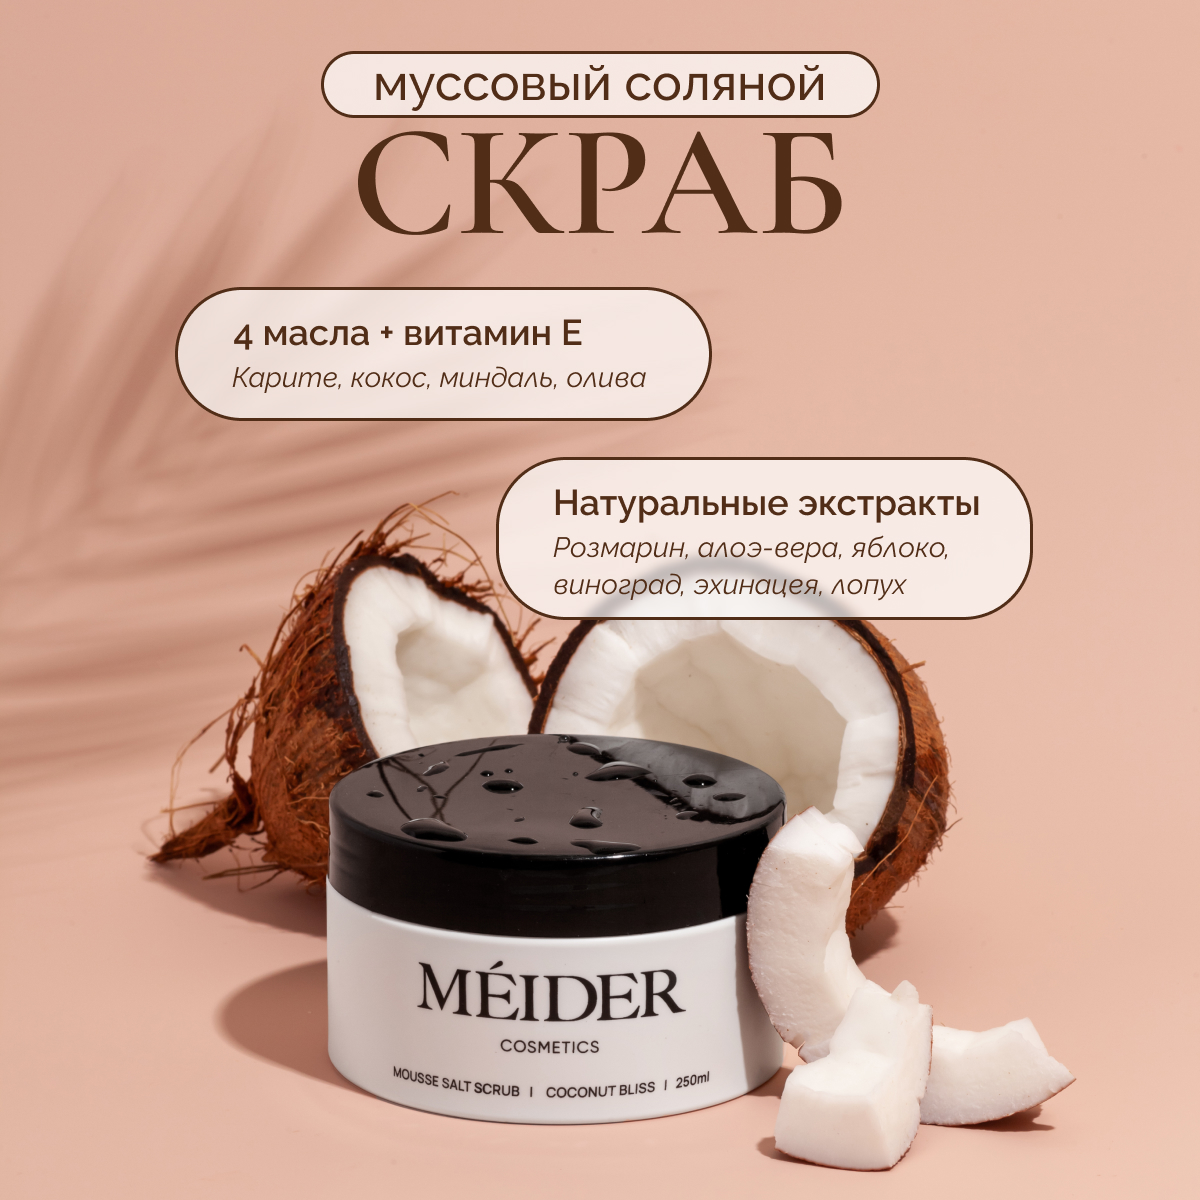 Соляной муссовый скраб для тела MEIDER Cosmetics Coconut Bliss кокос и масло карите, 300 г shato cosmetics скраб гидрофильный для тела малиновый джем 150